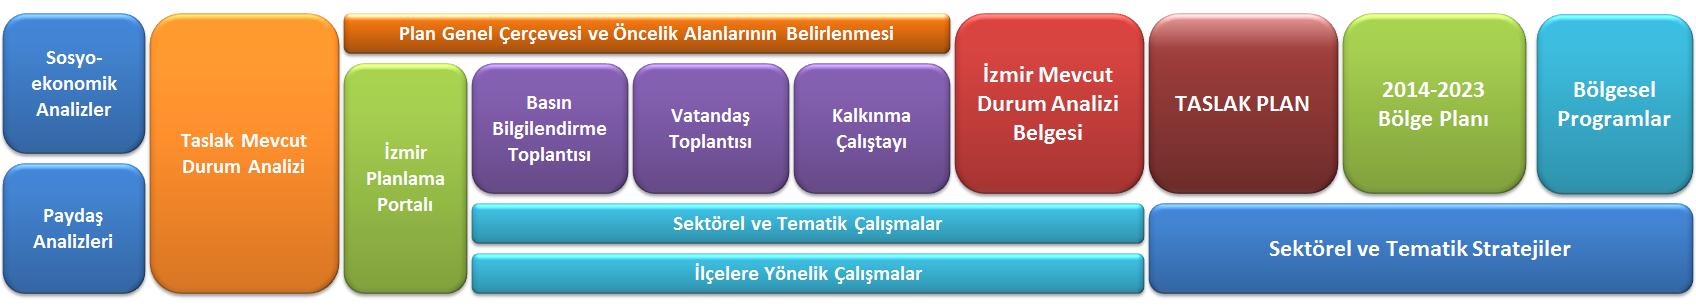 2014-2023 İzmir Bölge Planı Hazırlık Süreci Vatandaş Toplantısı